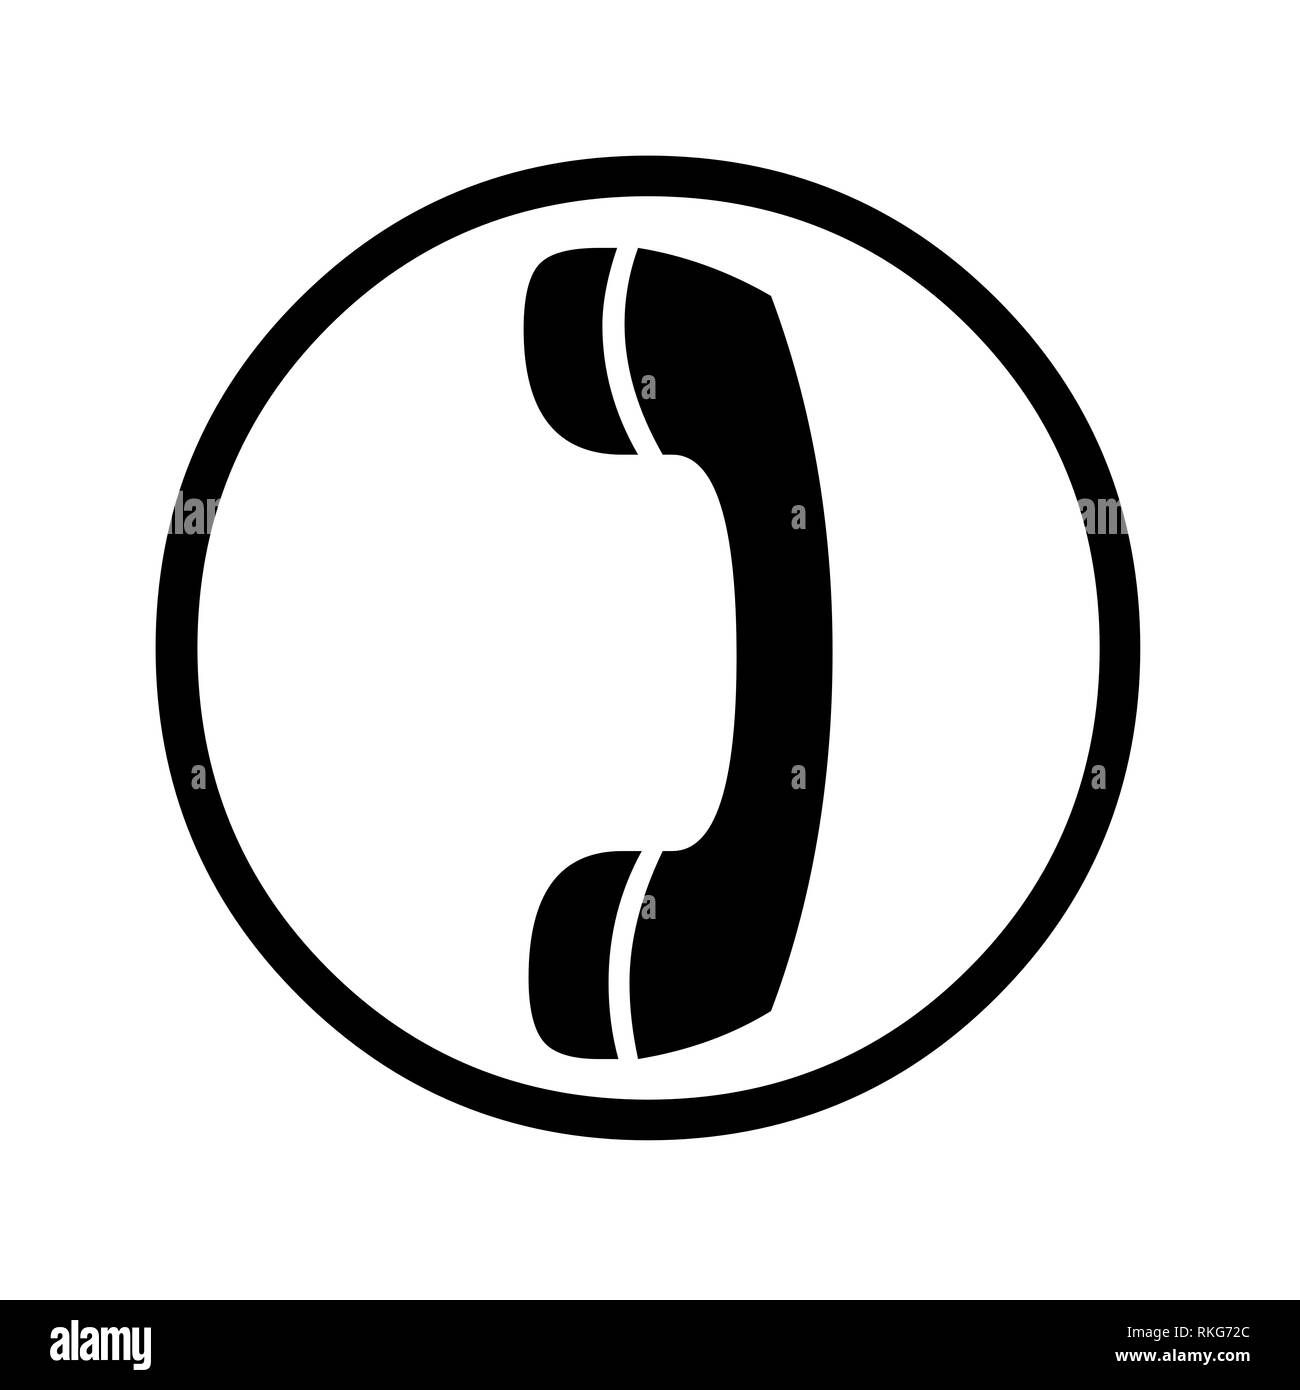 Telephone icon symbol illustration Stock Photo